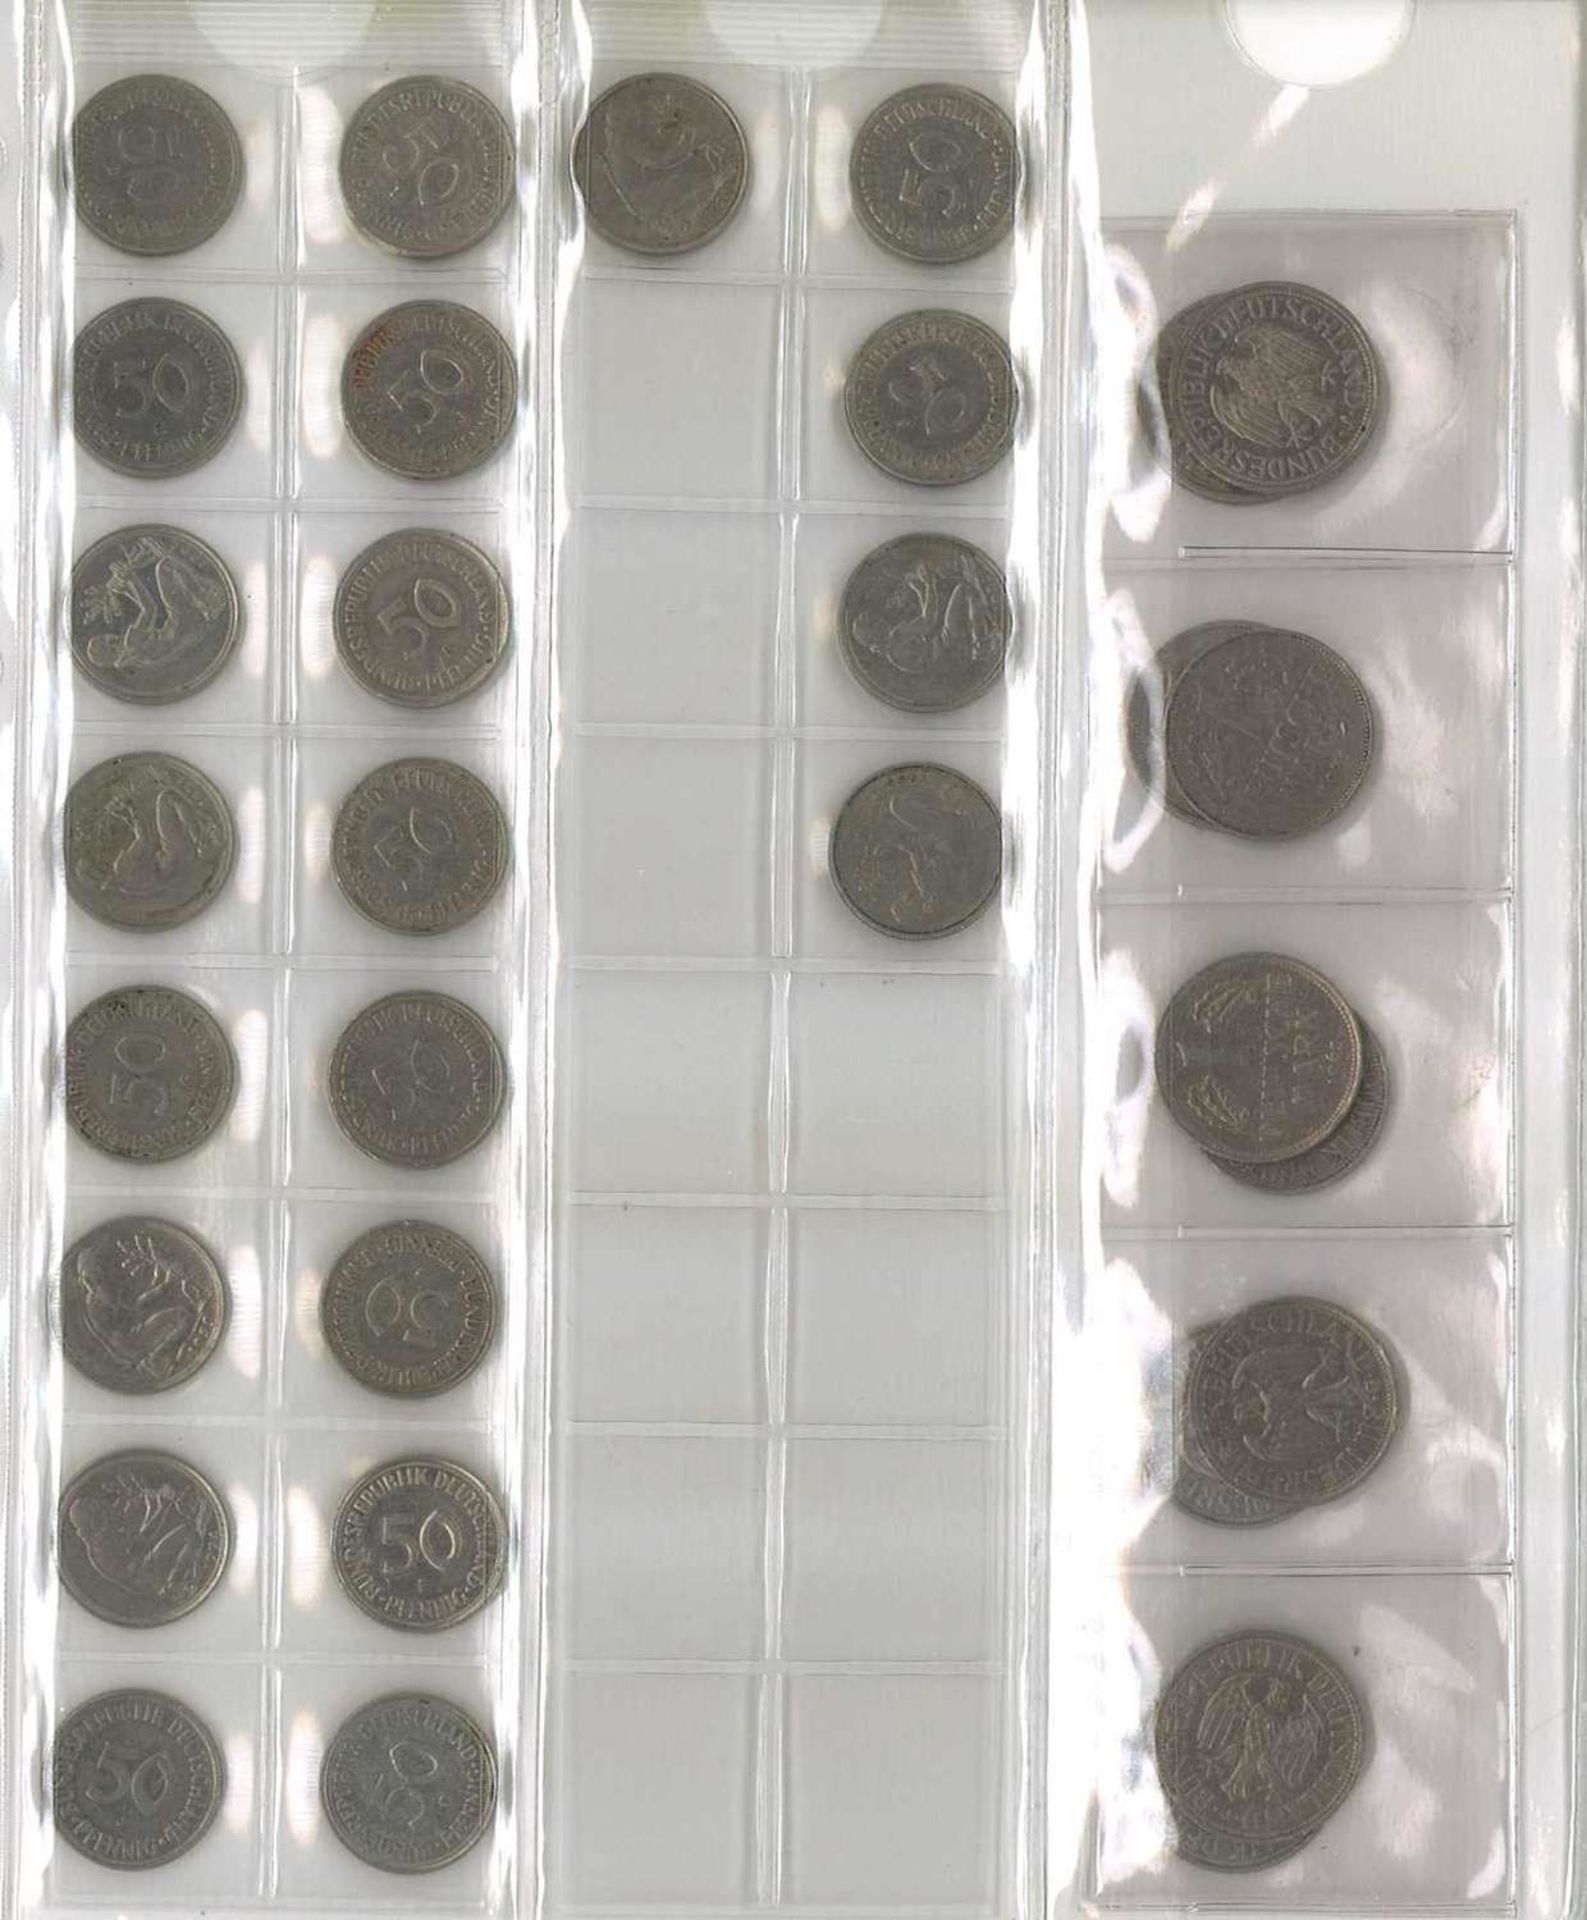 Lot Münzen, meist BRD, dabei 7x 10 Mark, 25x 5 Mark, 13x 2 Mark, 35x 1 Mark, 37x 50 Pfennig. Nomin - Image 5 of 6